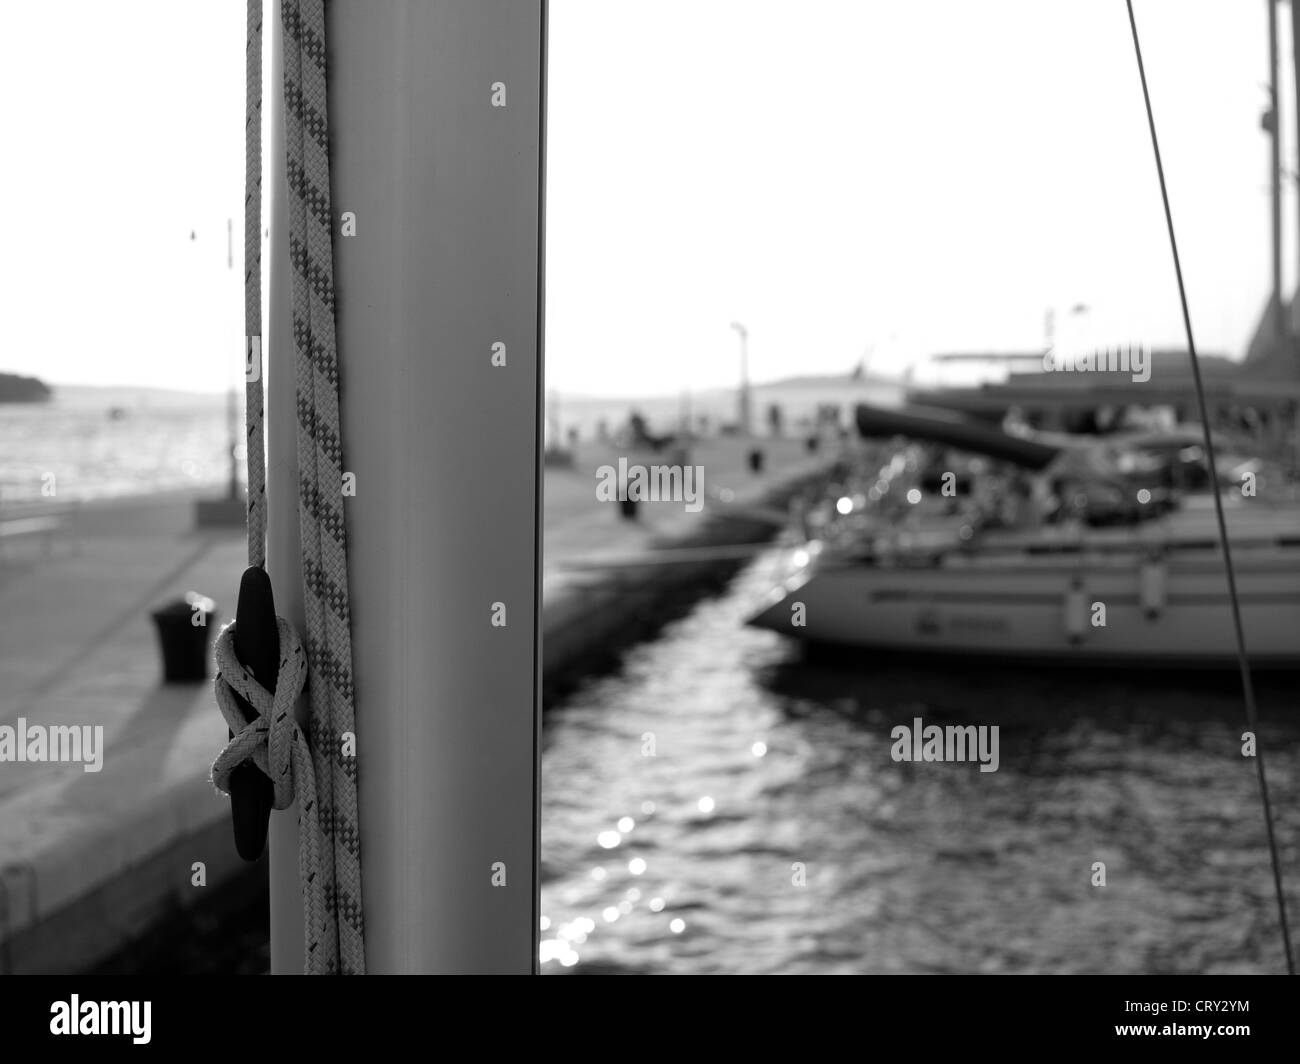 Immagine della marina con barche prese da una barca - fotografia in bianco e nero Foto Stock